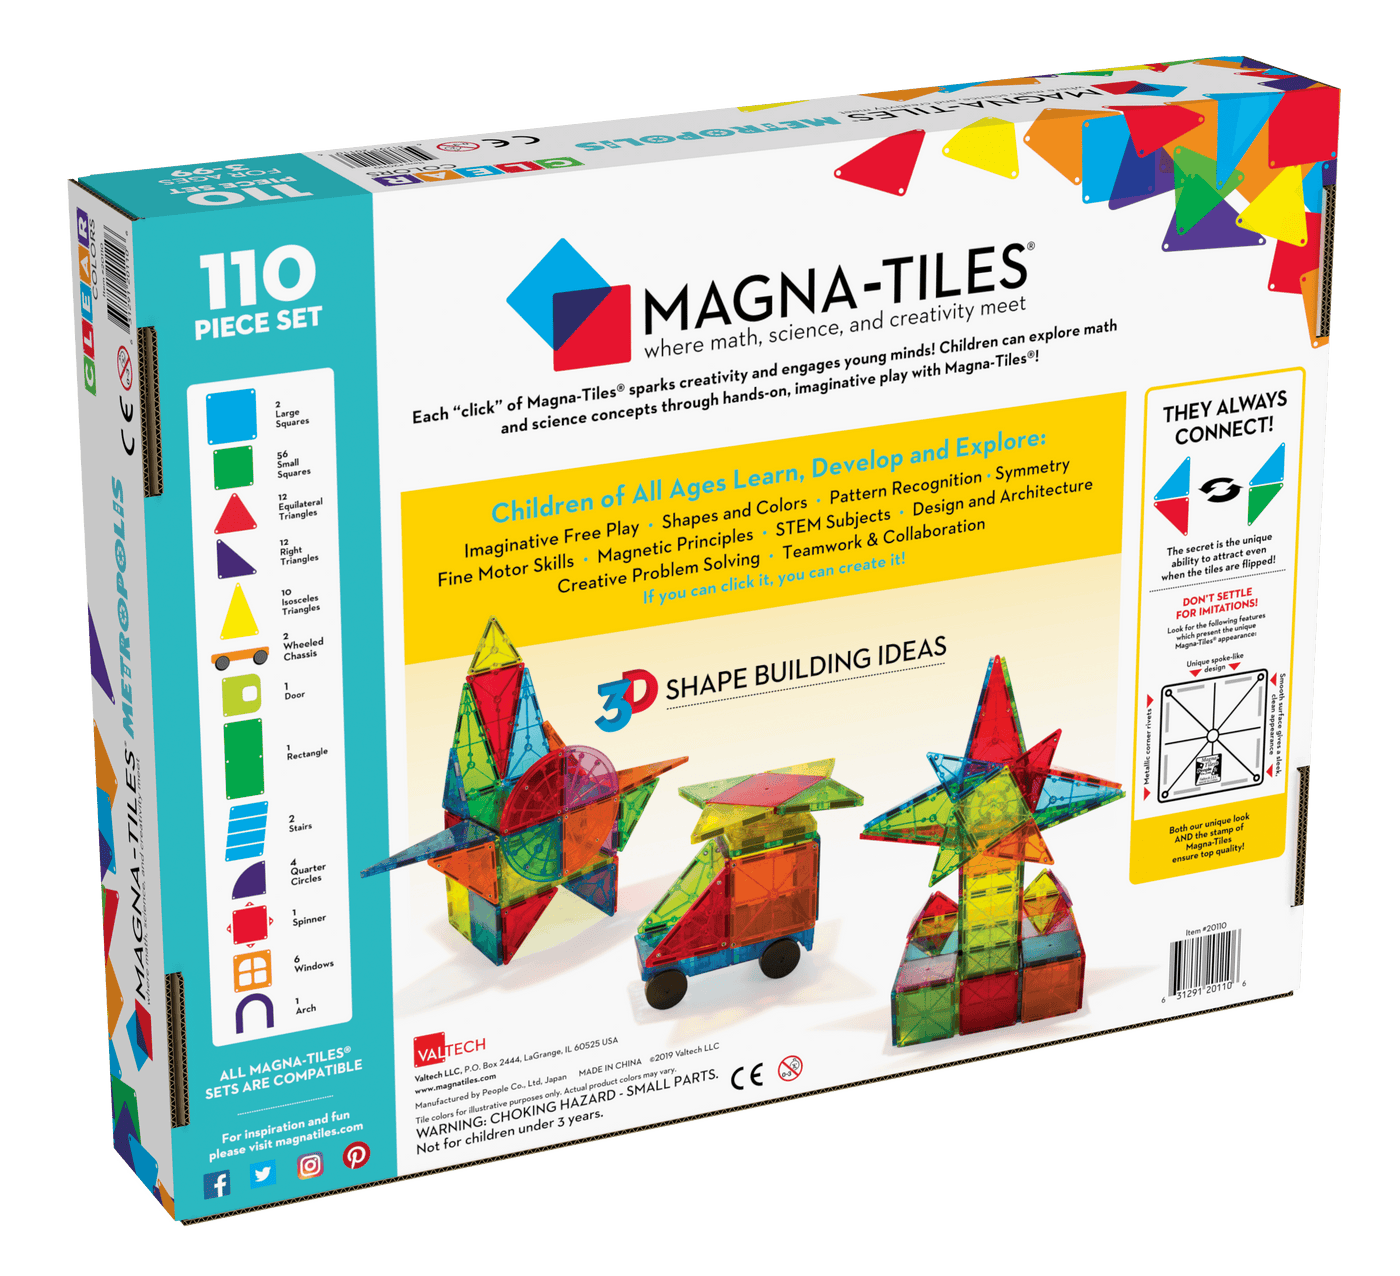 Magna-Tiles Metropolis 110 Piece Set 3Y+